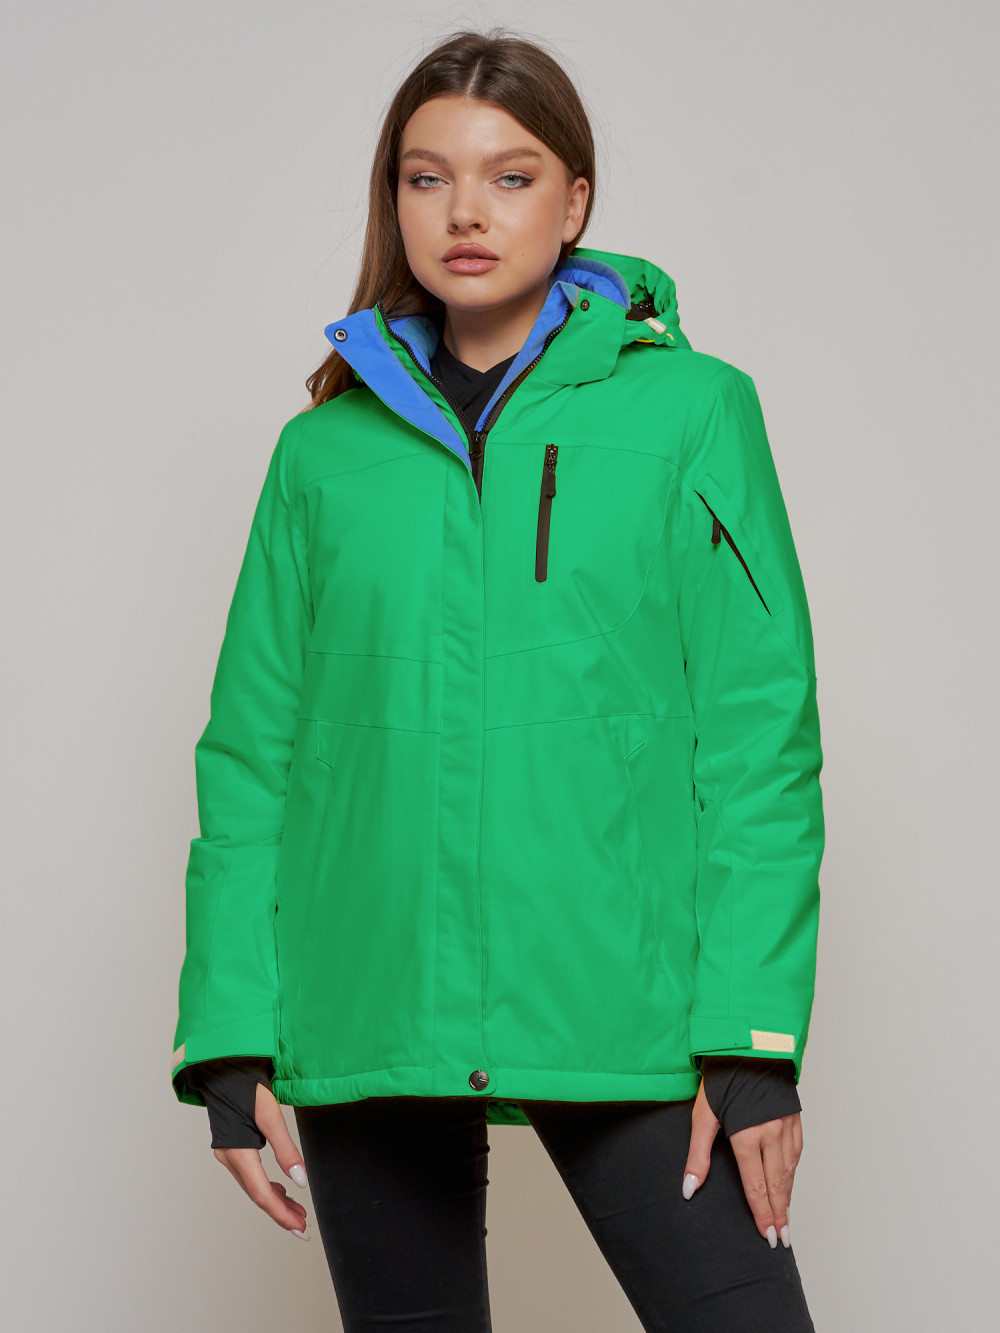 Купить оптом Горнолыжная куртка женская зимняя зеленого цвета 05Z в Казани